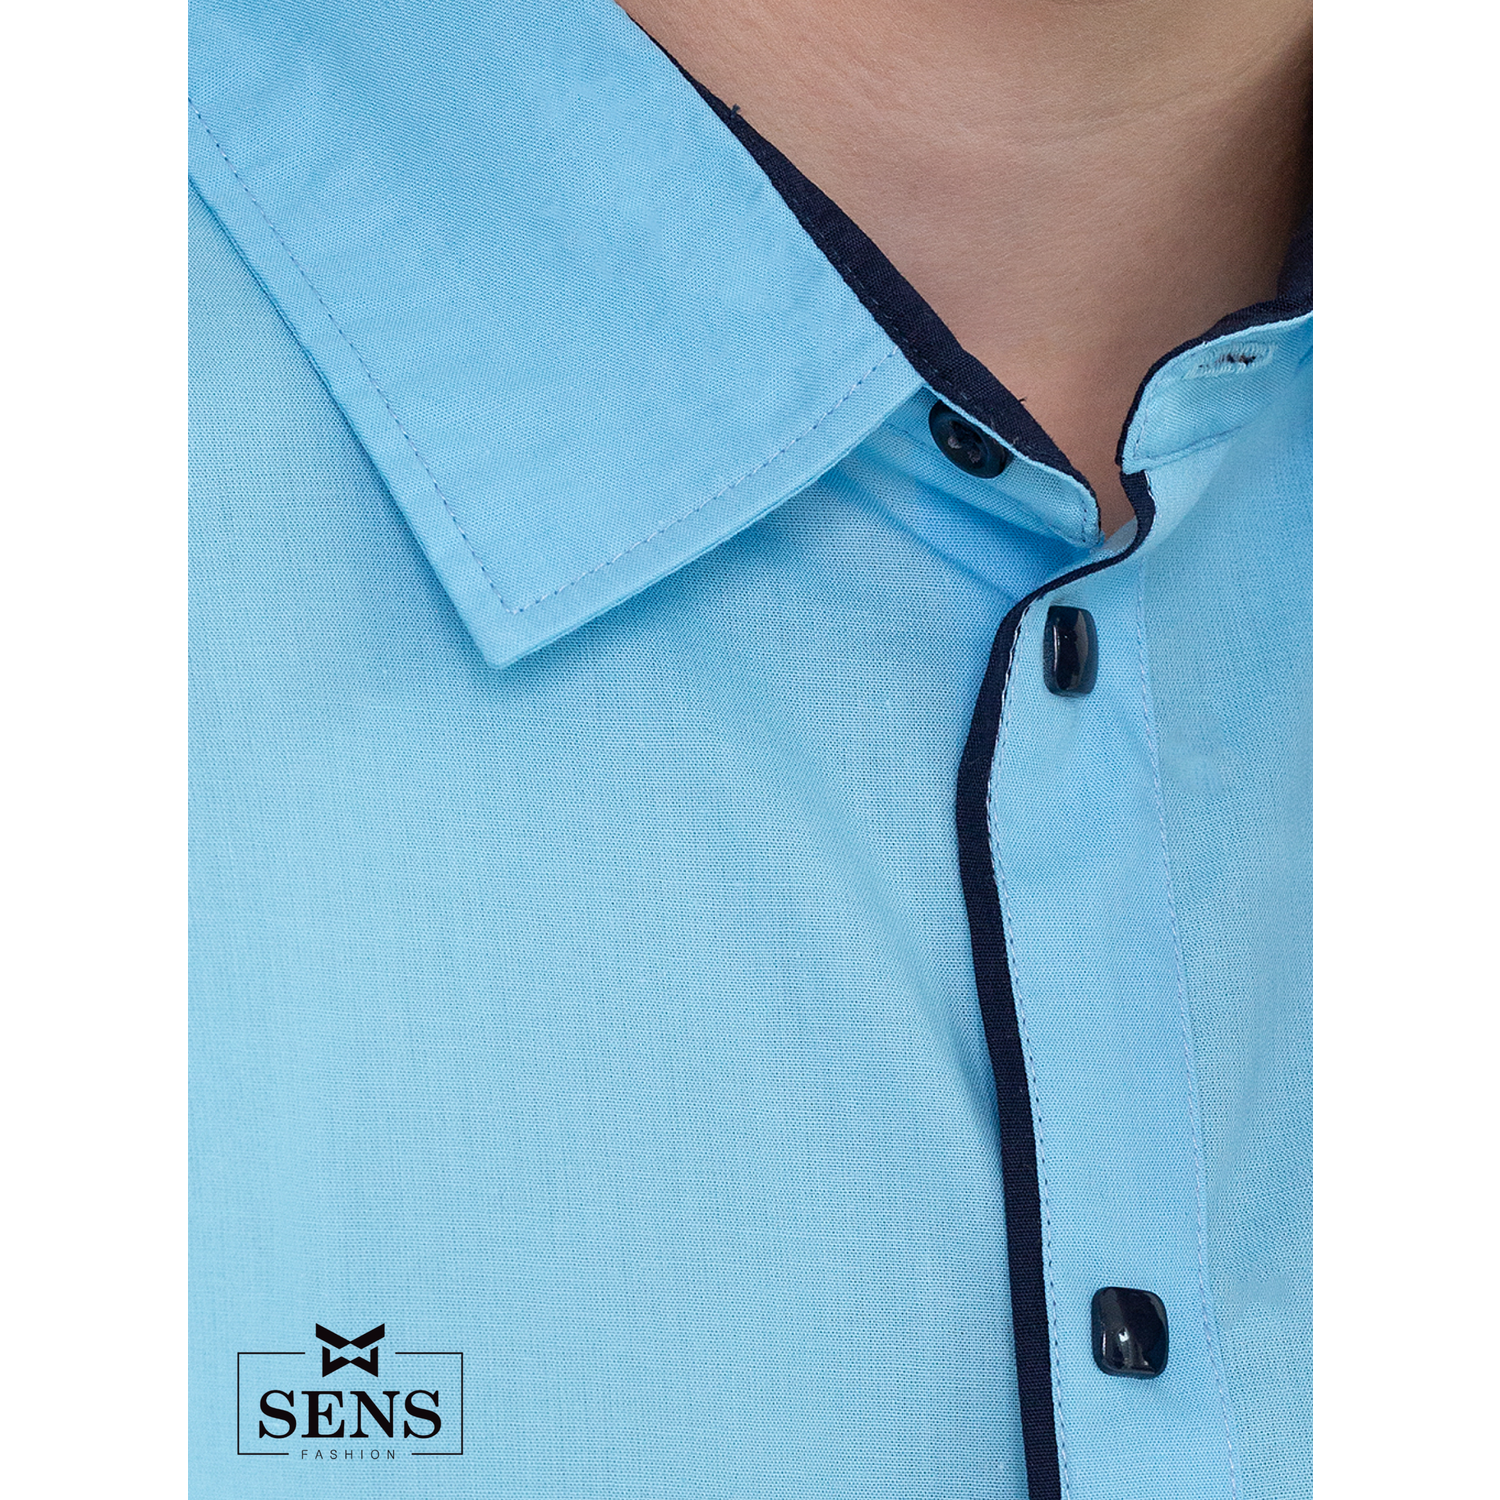 Рубашка Sens Fashion РМК/голубой - фото 3